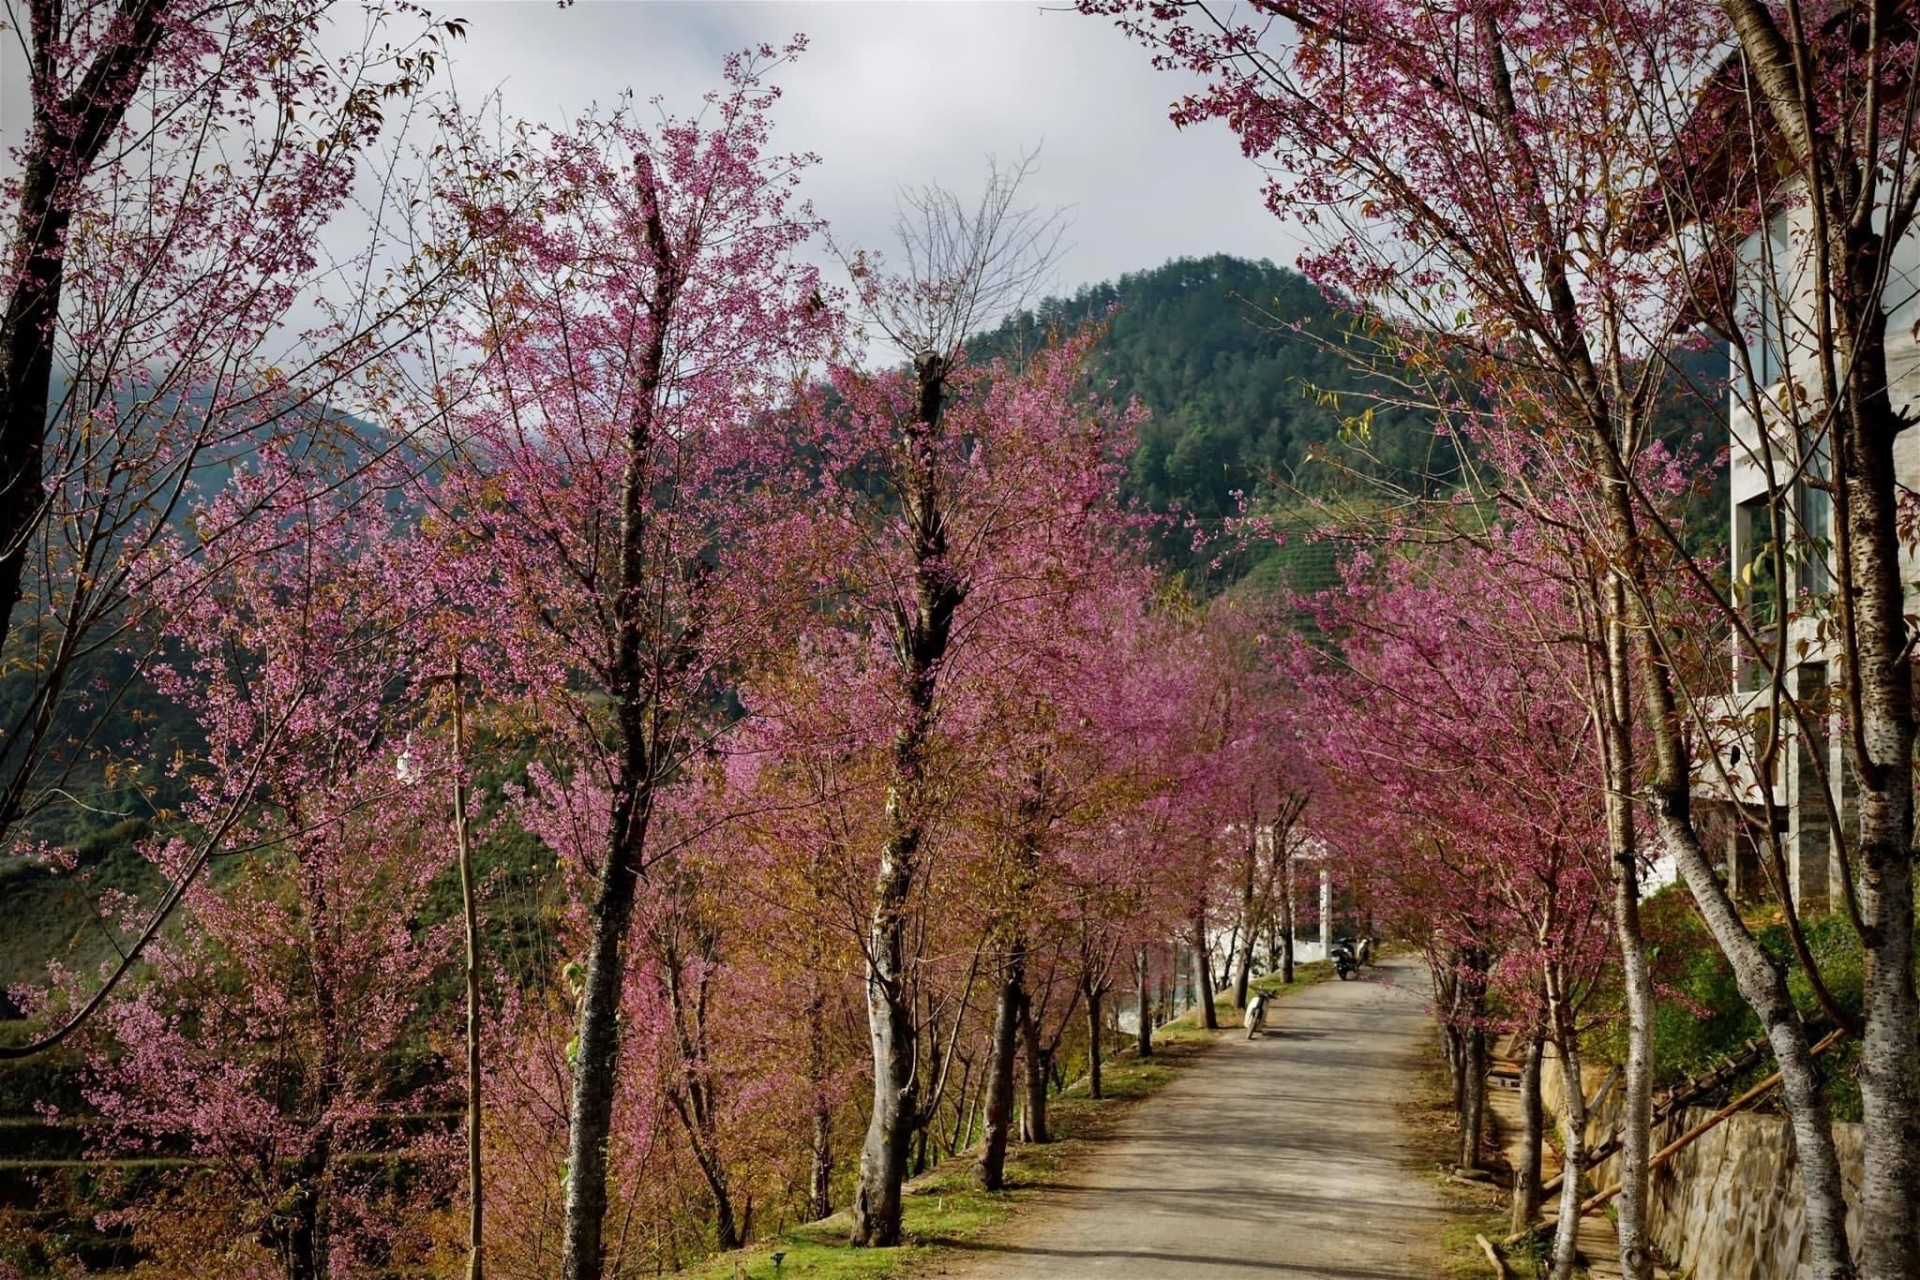 Chiêm ngưỡng sắc hoa tớ dày nhuộm hồng núi rừng Mù Cang Chải - Ảnh 6.